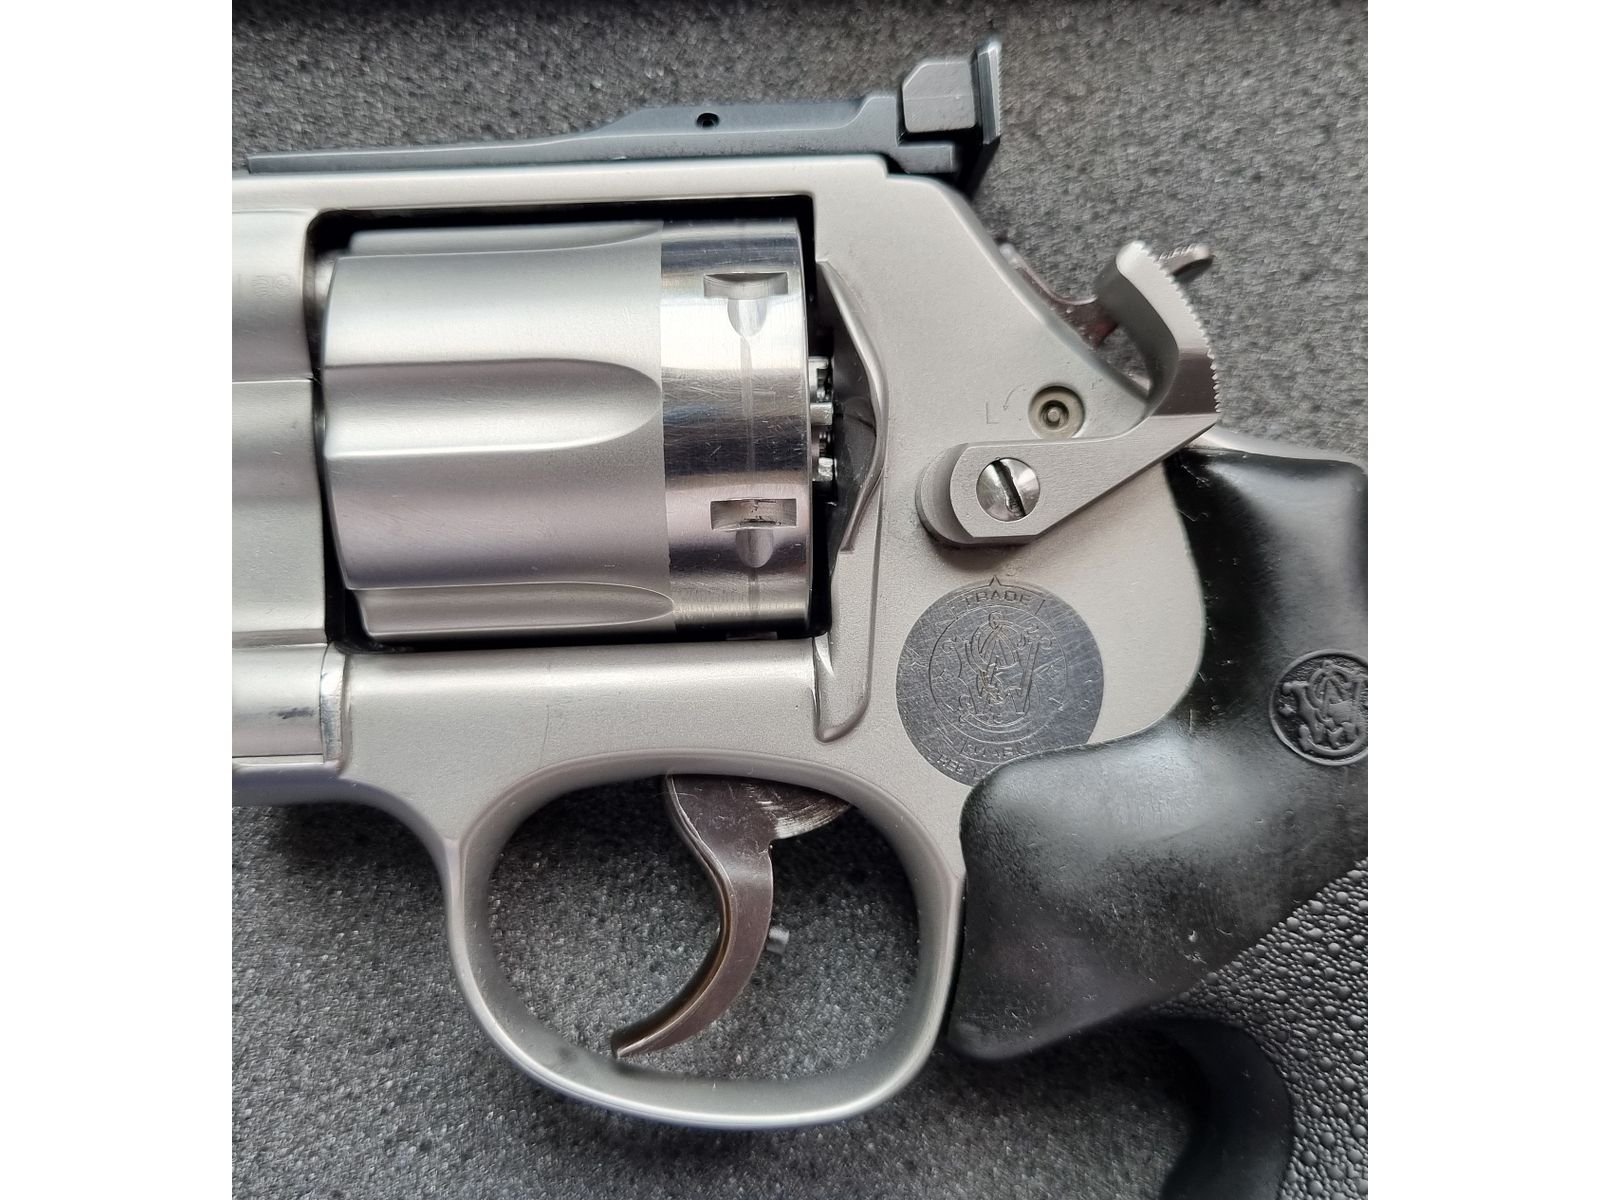 Smith & Wesson Revolver 686 im Kaliber .357 Magnum / Merkle Tuning / Match-Visier / VHB